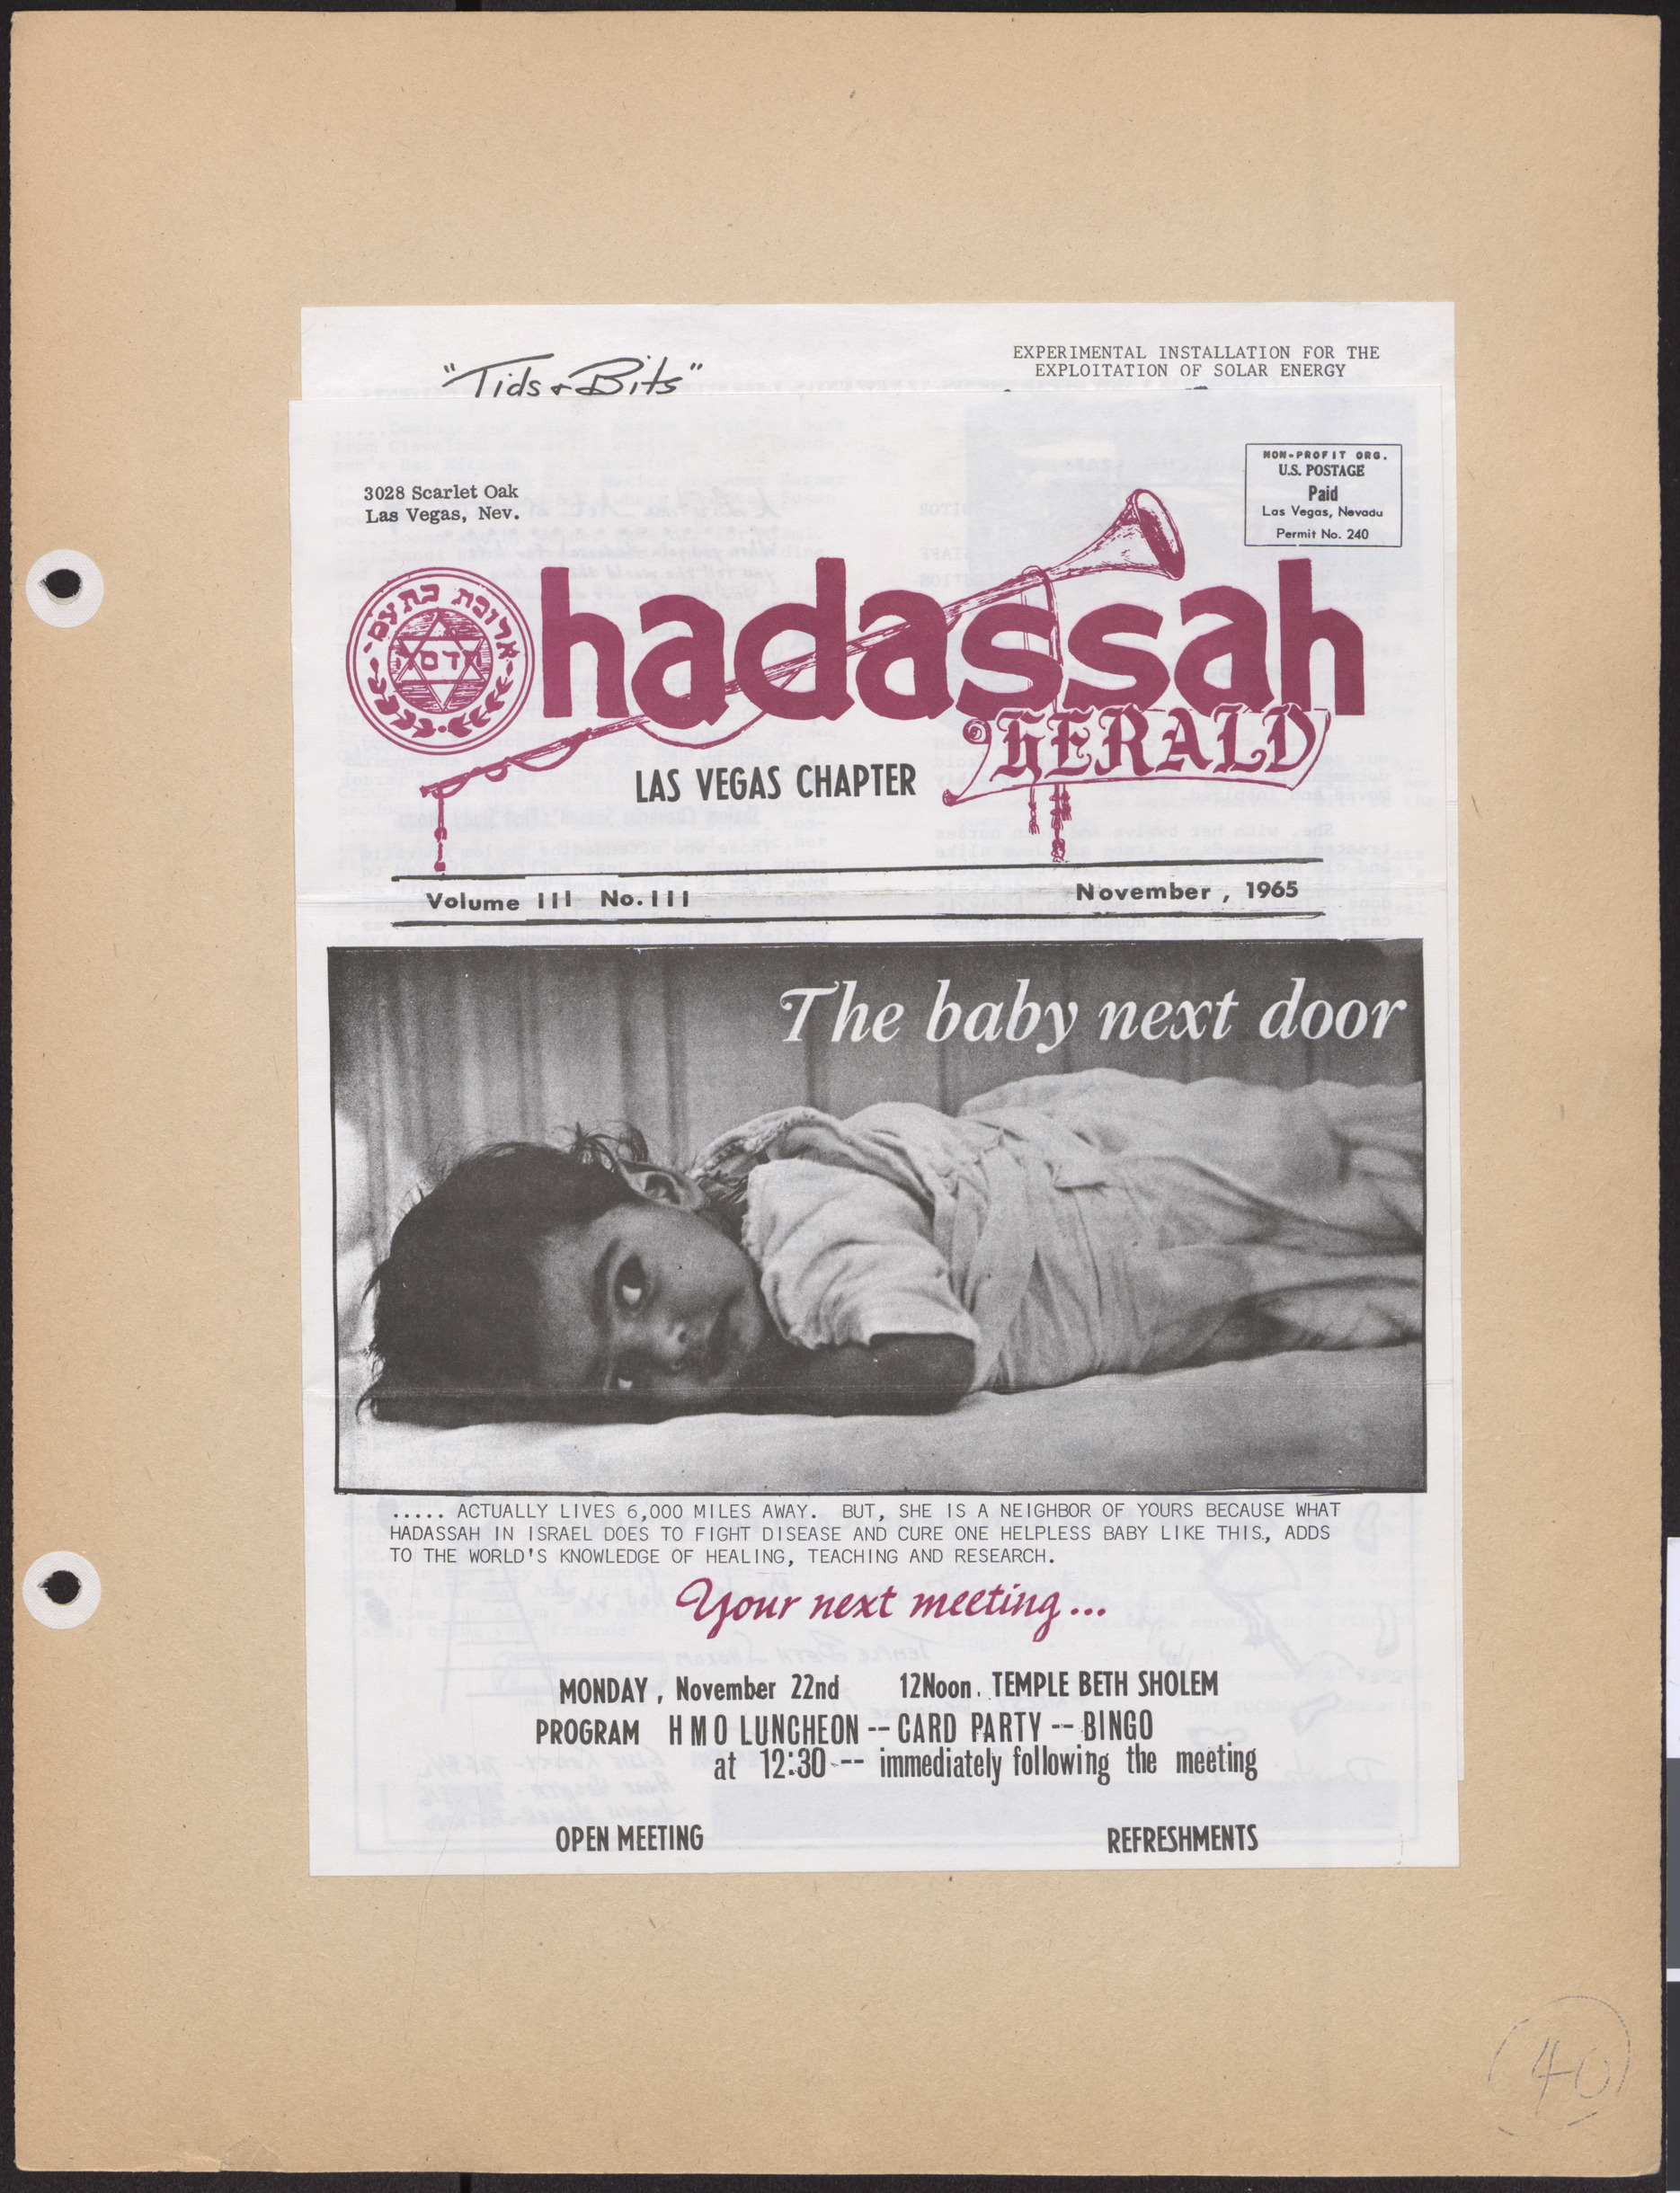 Hadassah Las Vegas Chapter newsletter, November 1965, cover